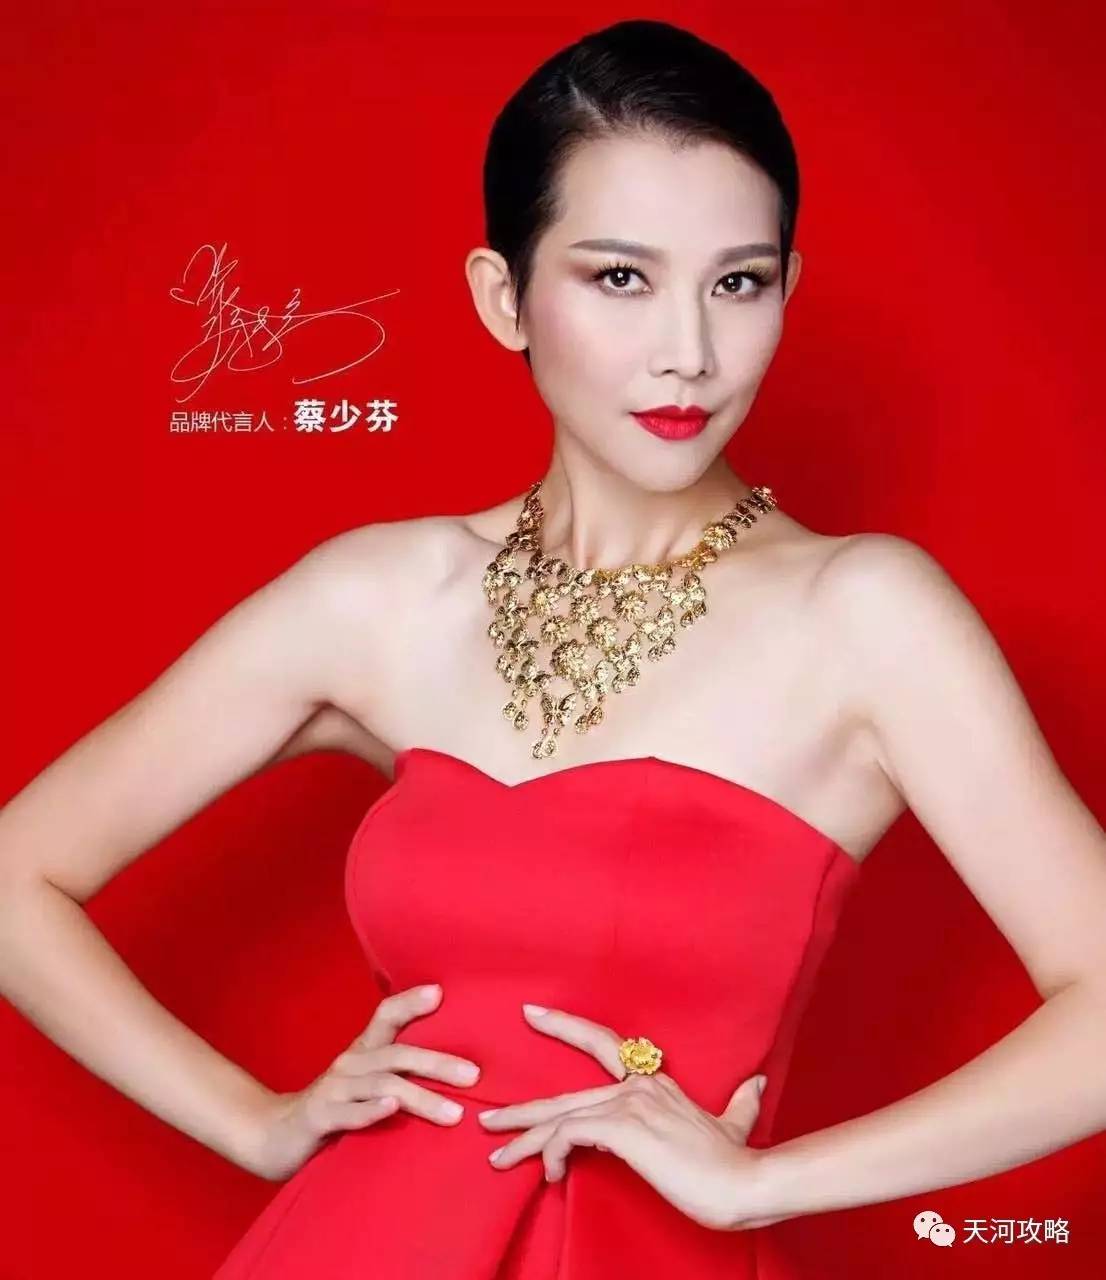 刘嘉玲知名明星代言,实力加持周六福珠宝:中国著名品牌,中国最具价值